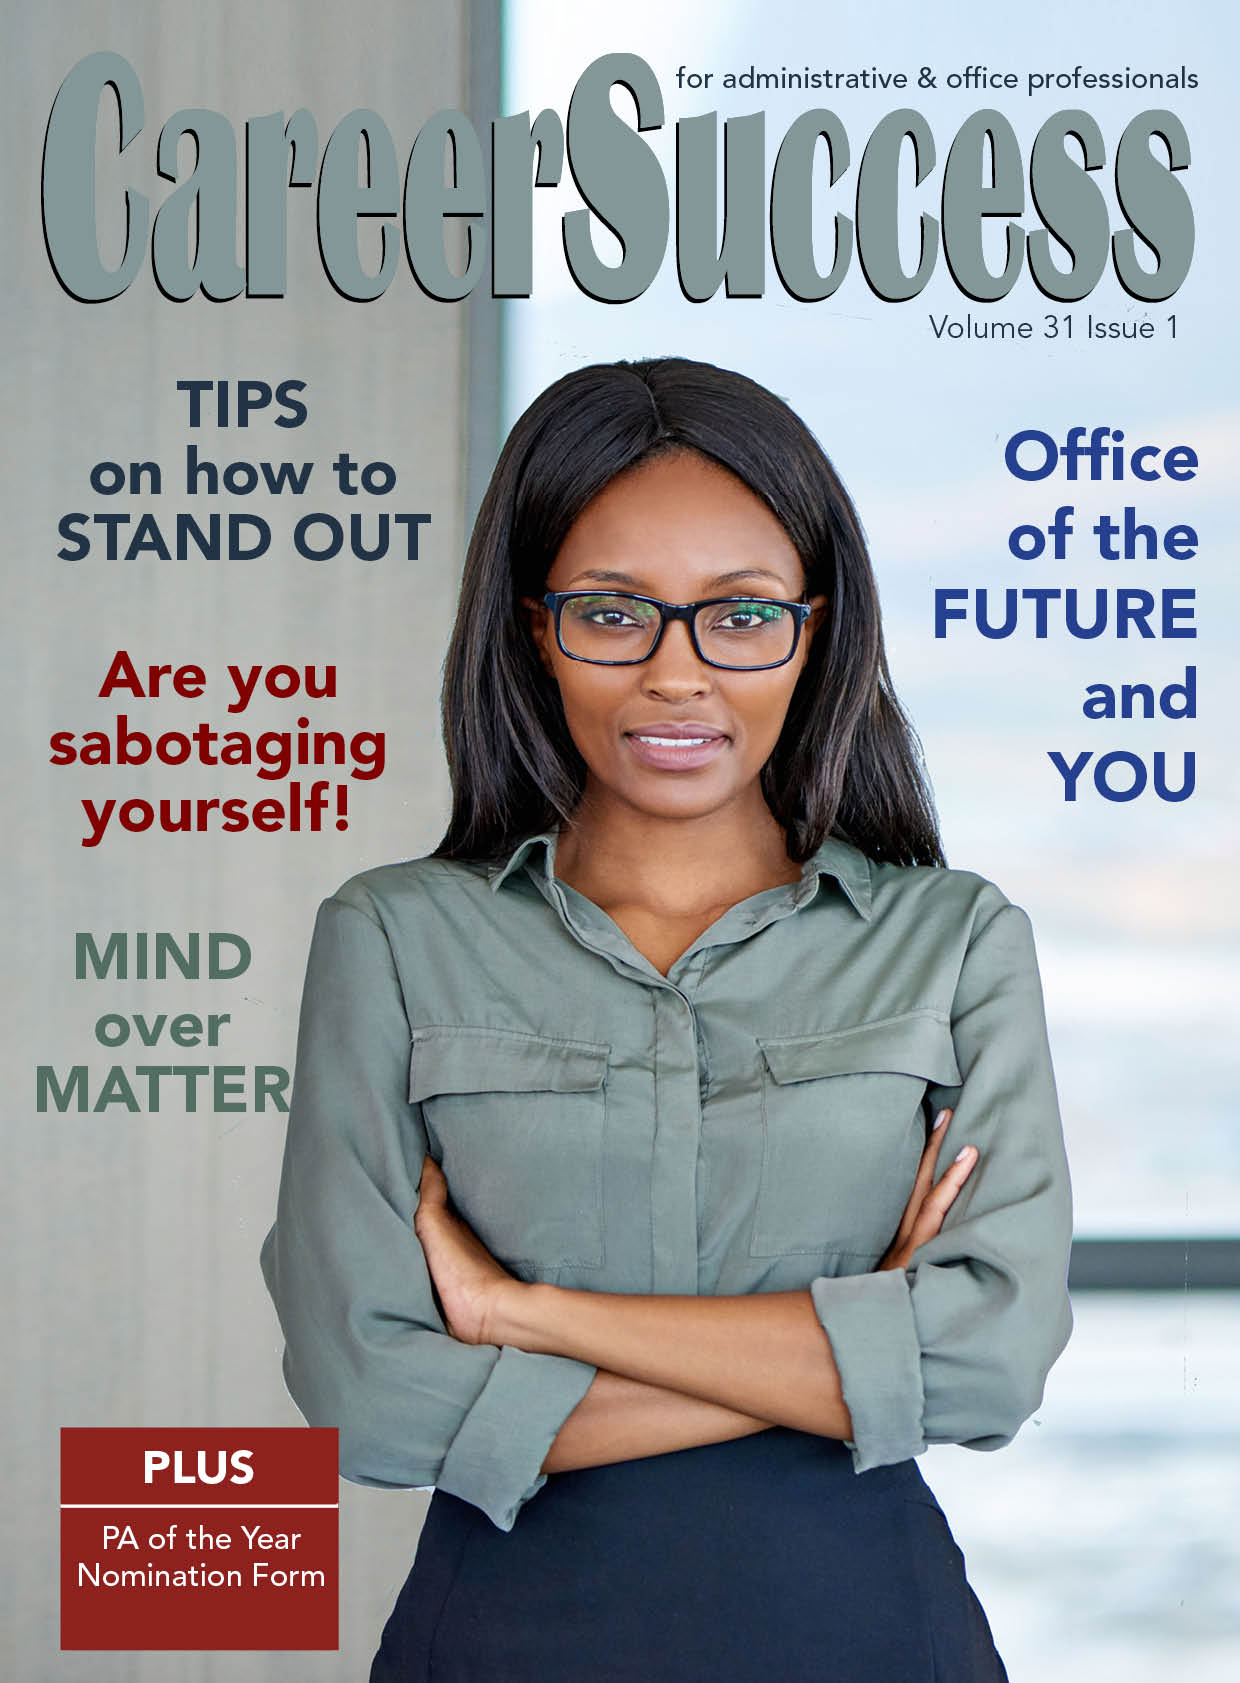 CareerSuccess magazine Issue 1 2018